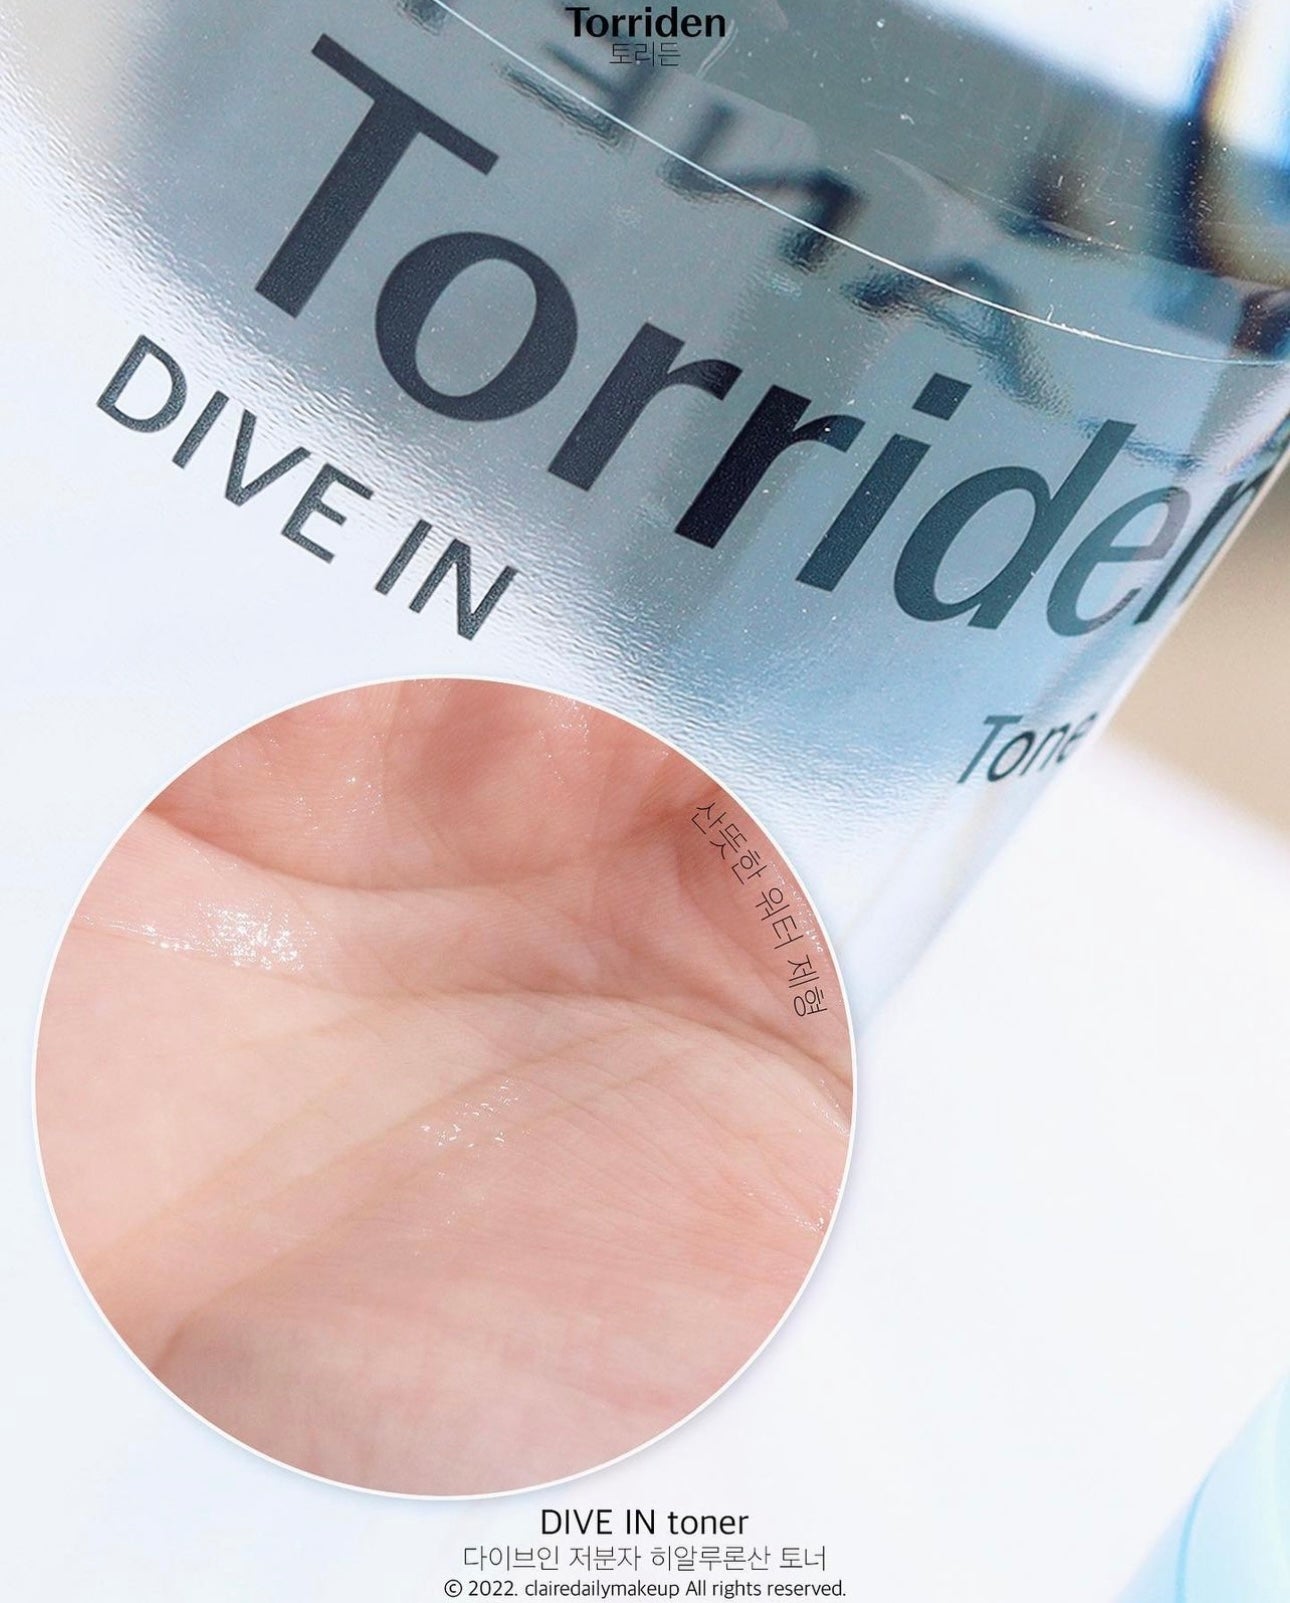 化解排行榜第一位 🌟Torriden 5D低分子透明質酸保濕爽膚水💧